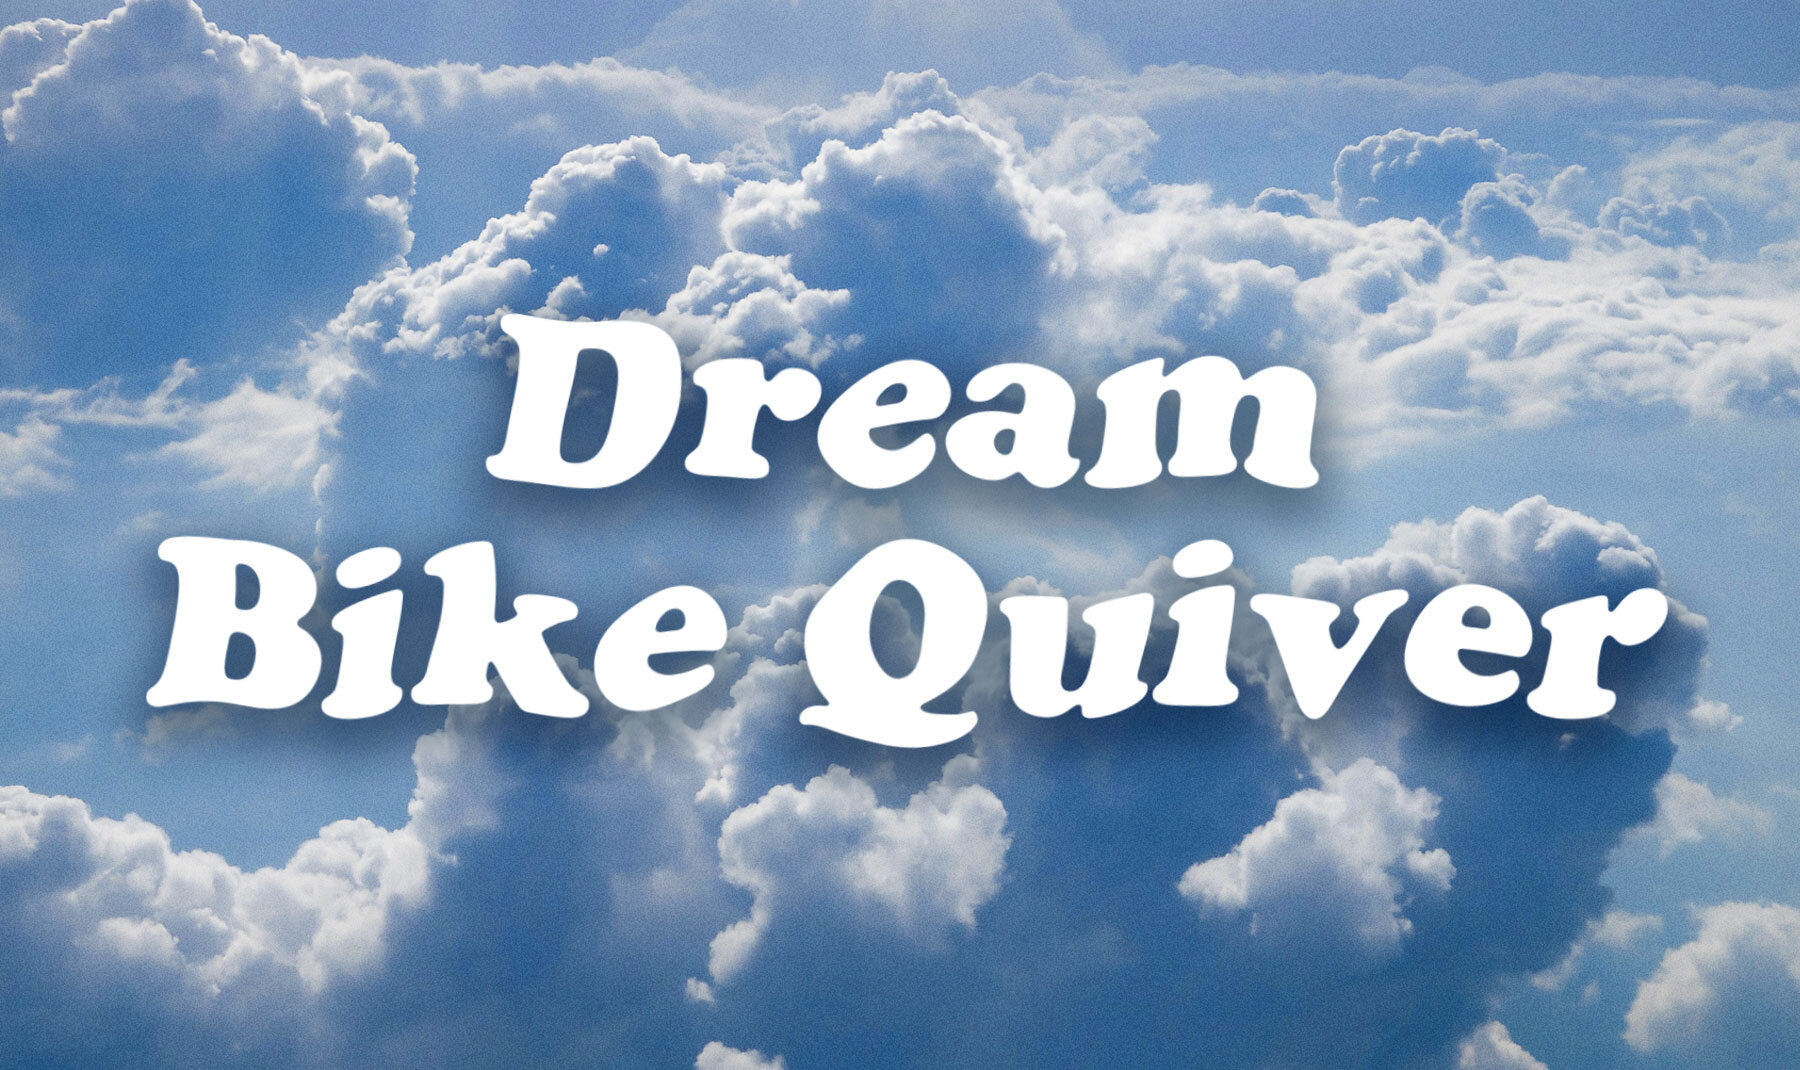 Dream bike quiver: Best rim brake bikes